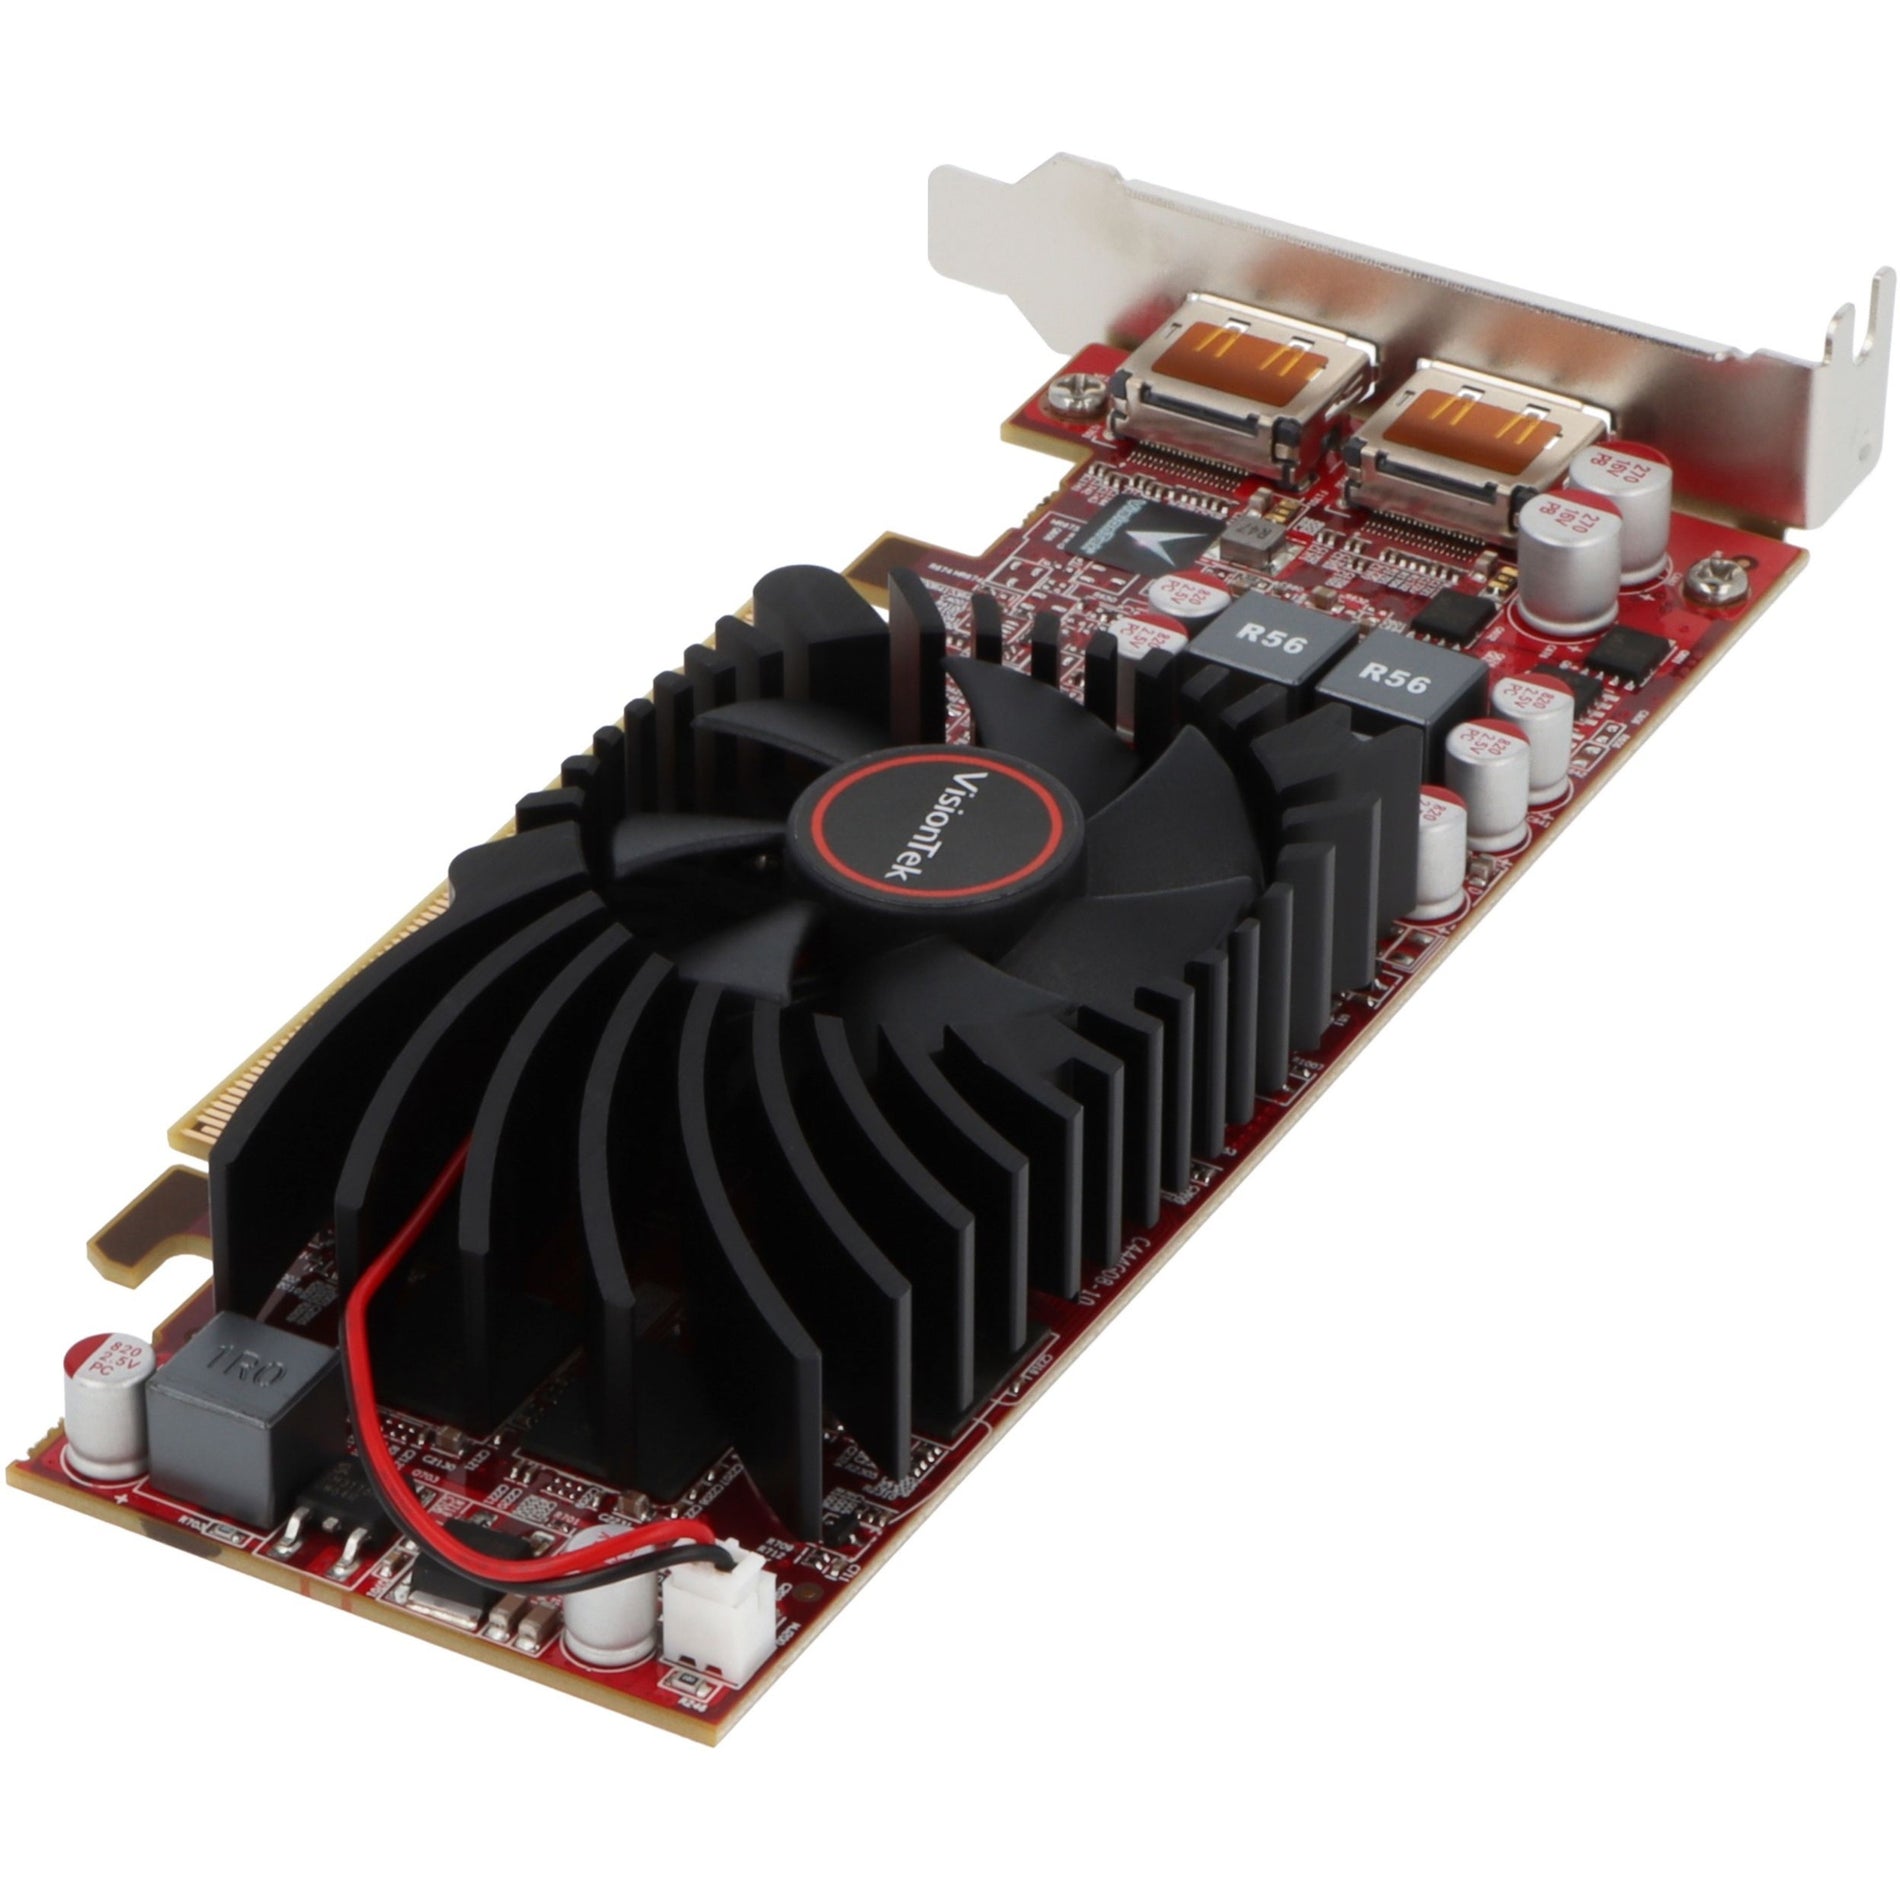 VisionTek 900942 AMD Radeon HD 7750 Graphic Card, 2GB GDDR5, 3-Year Warranty